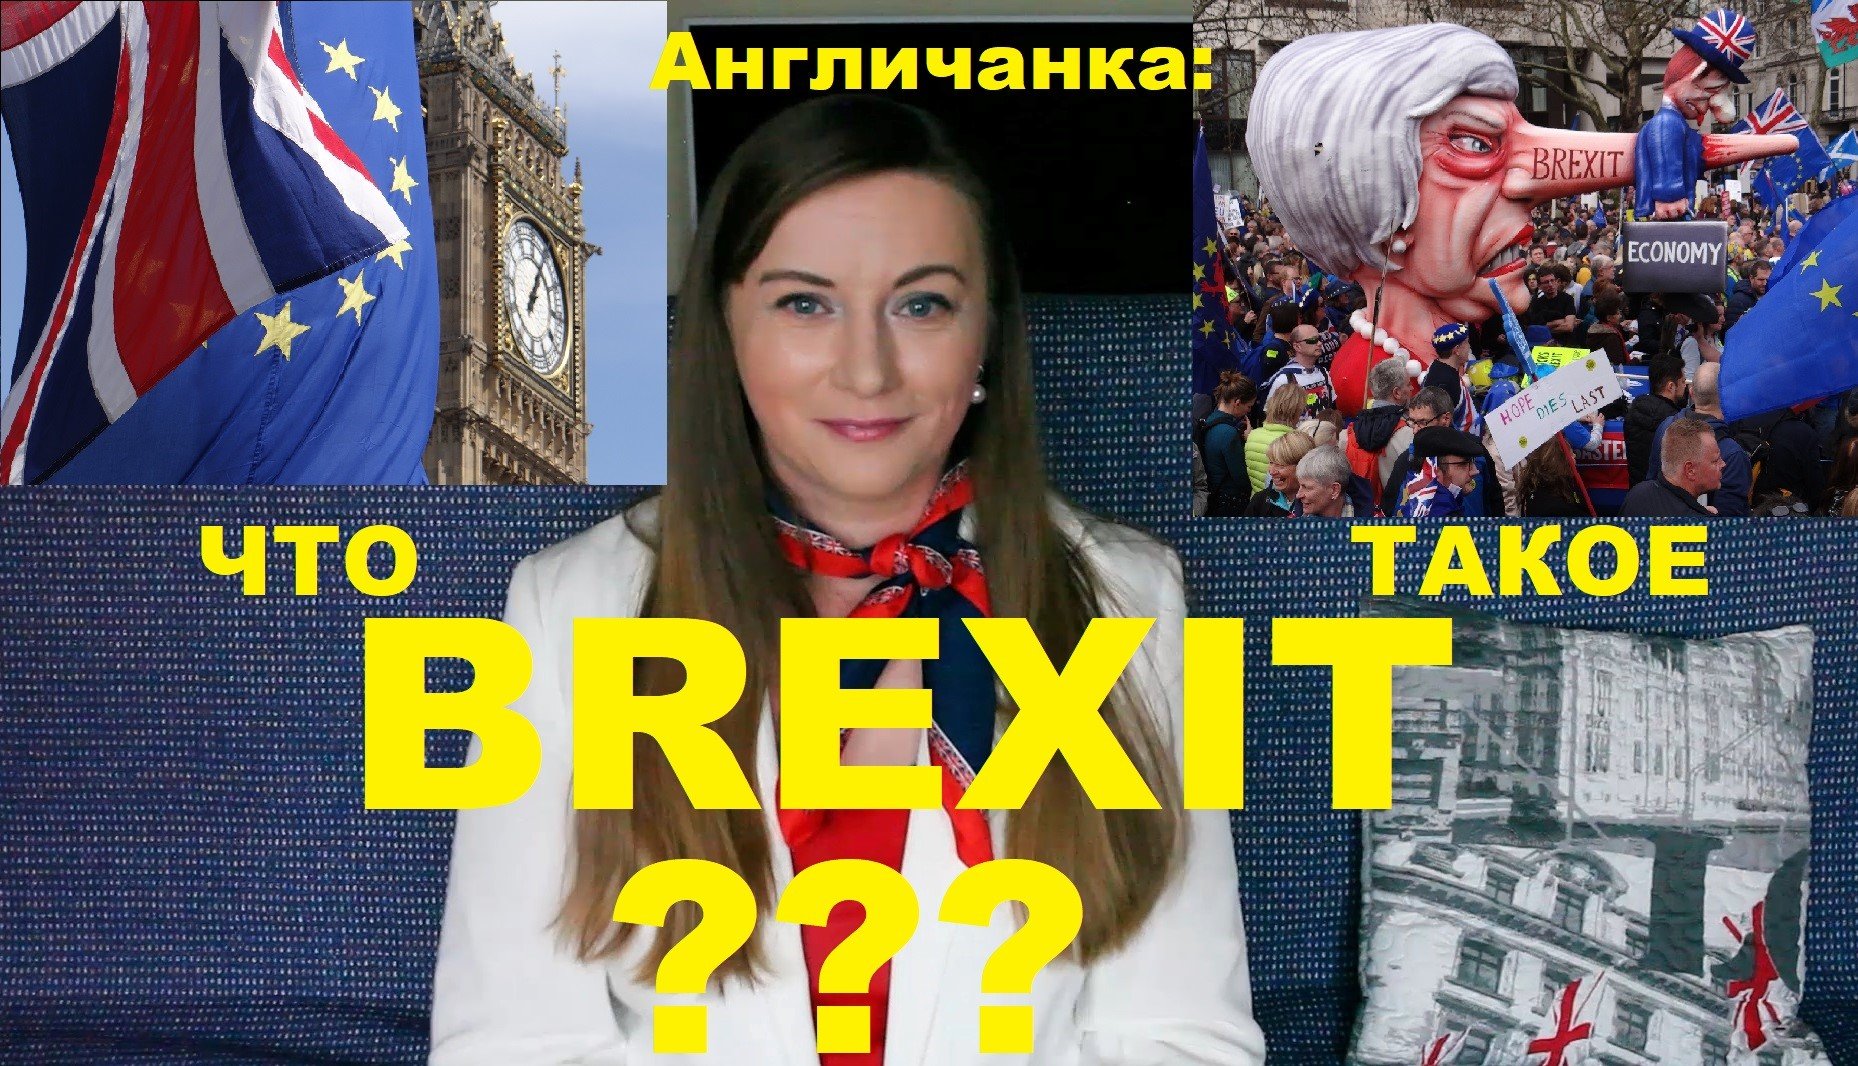 АНГЛИЯ: Что такое БРЕКСИТ? ЧТО будет дальше с Великобританией и Европой?